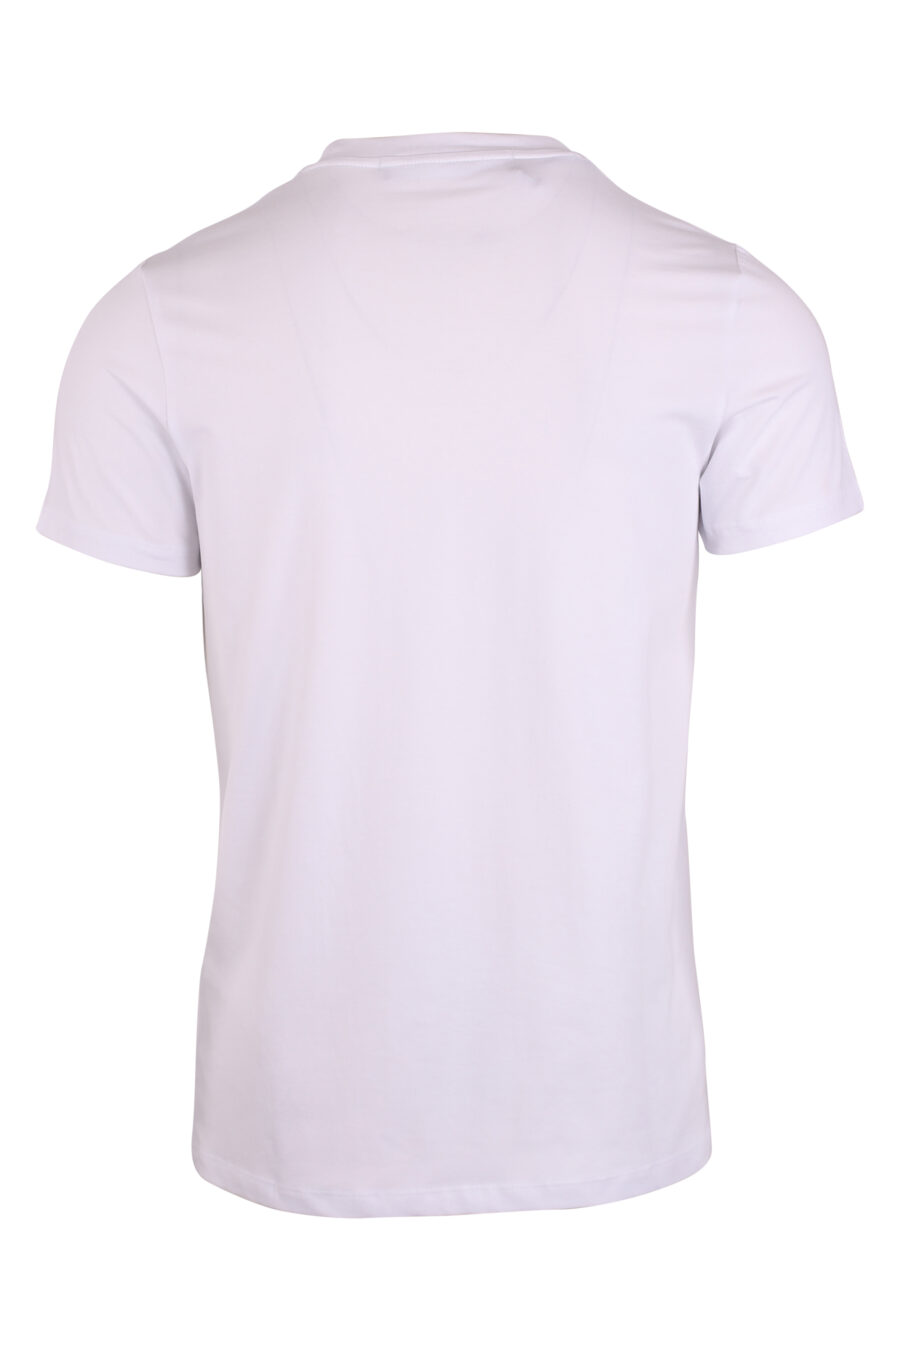 Camiseta blanca con bolsillo con cremallera y logo blanco en parche - IMG 9474